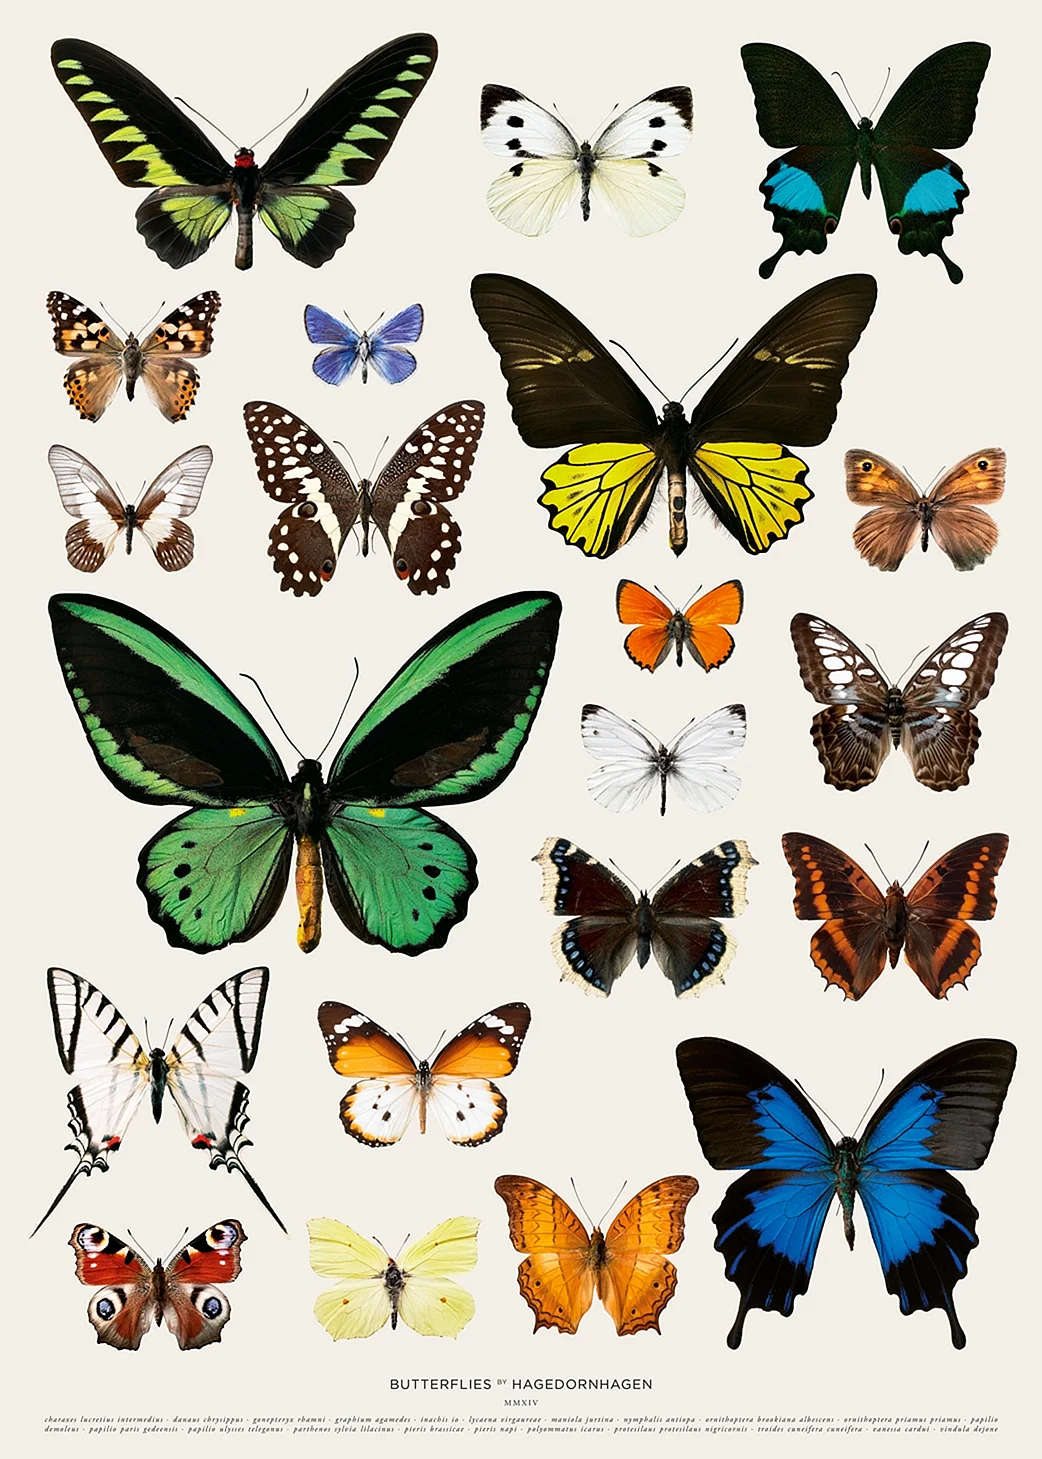 Разнообразие бабочек